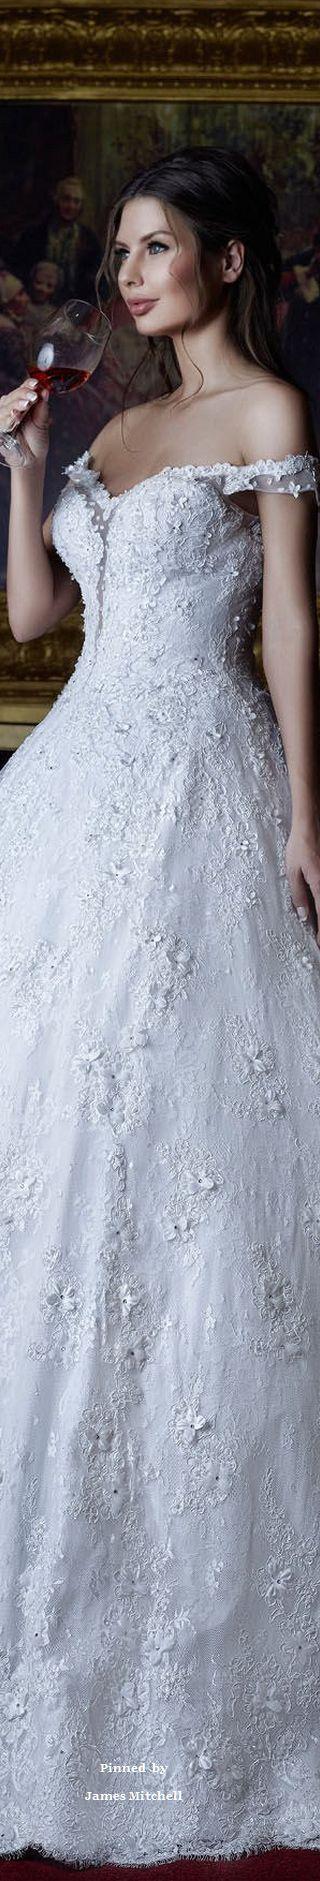 Wedding - White Couture